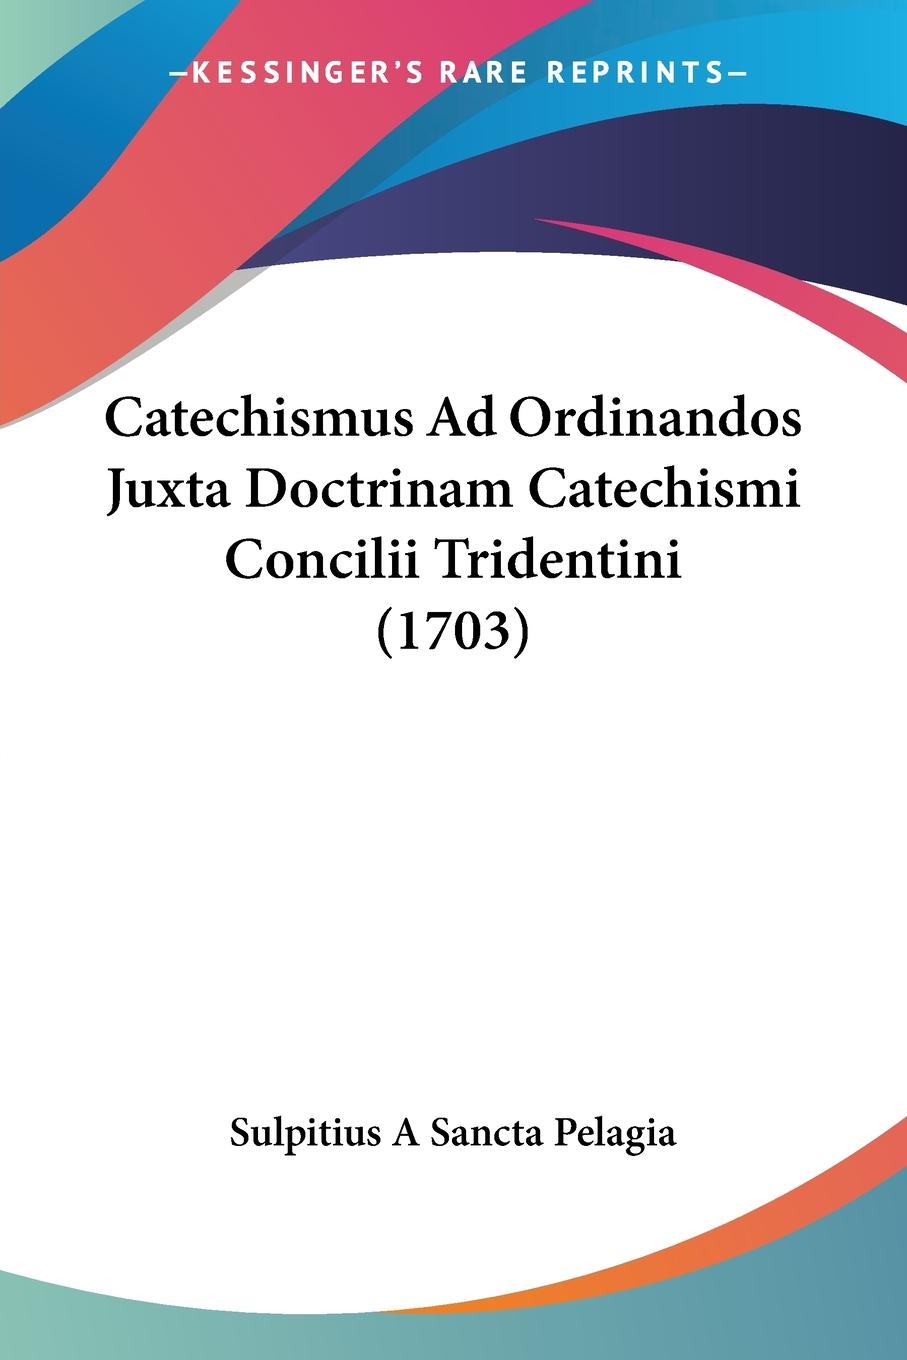 Catechismus Ad Ordinandos Juxta Doctrinam Catechismi Concilii Tridentini (1703) - Sulpitius A Sancta Pelagia